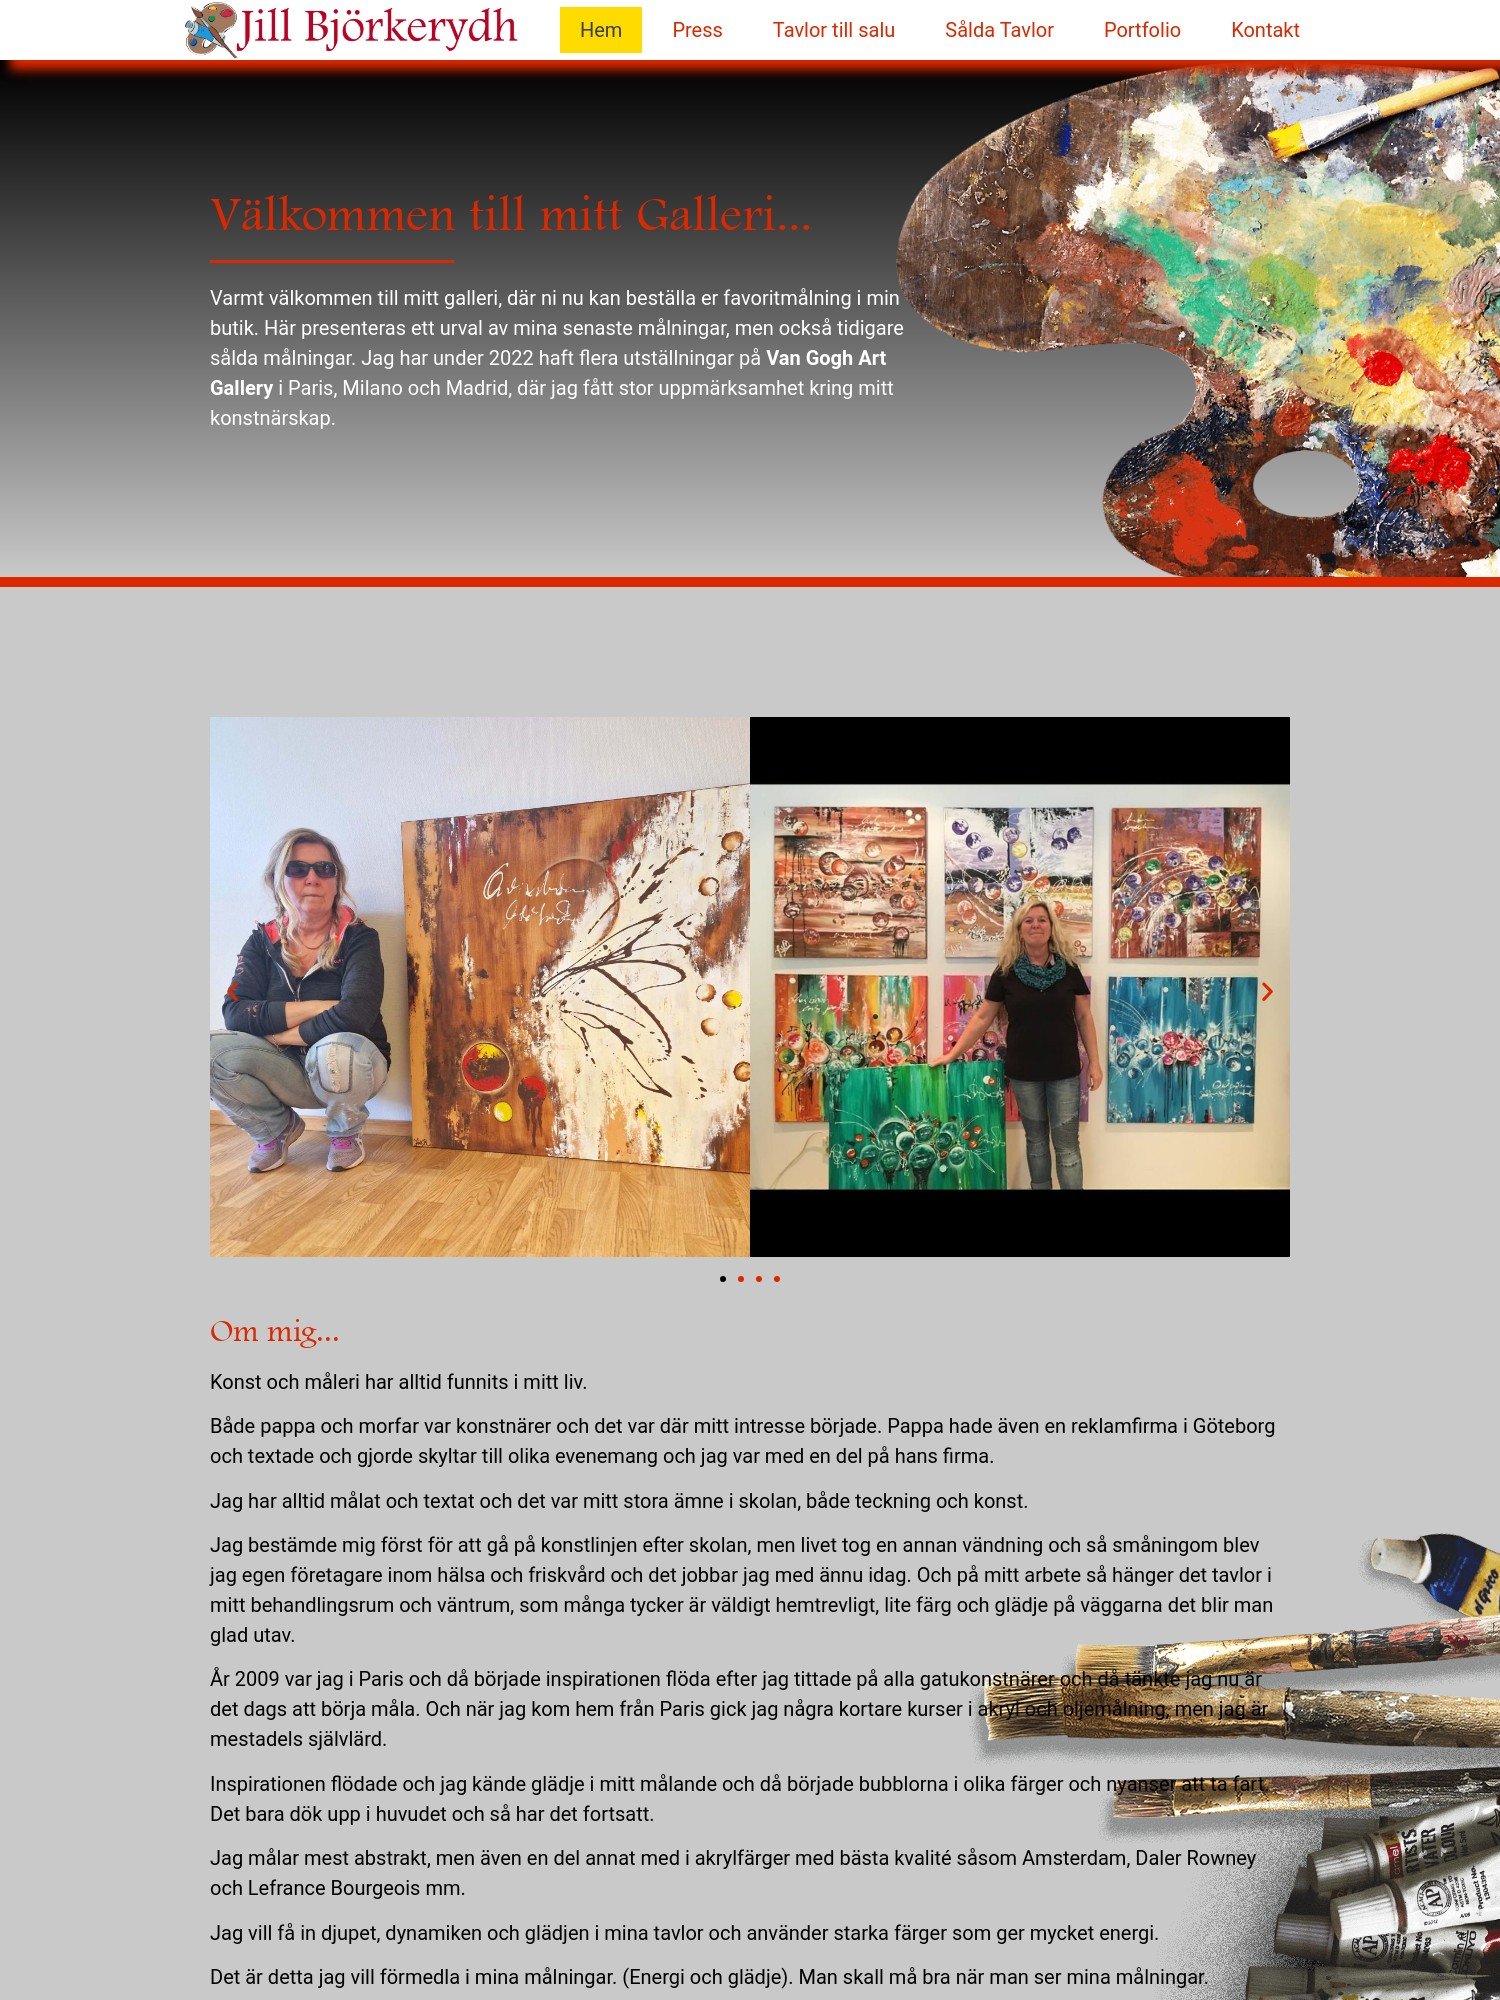 Jill Bjorkerydh – Konst tavlor till salu 1 Interwebsite Webbyrå